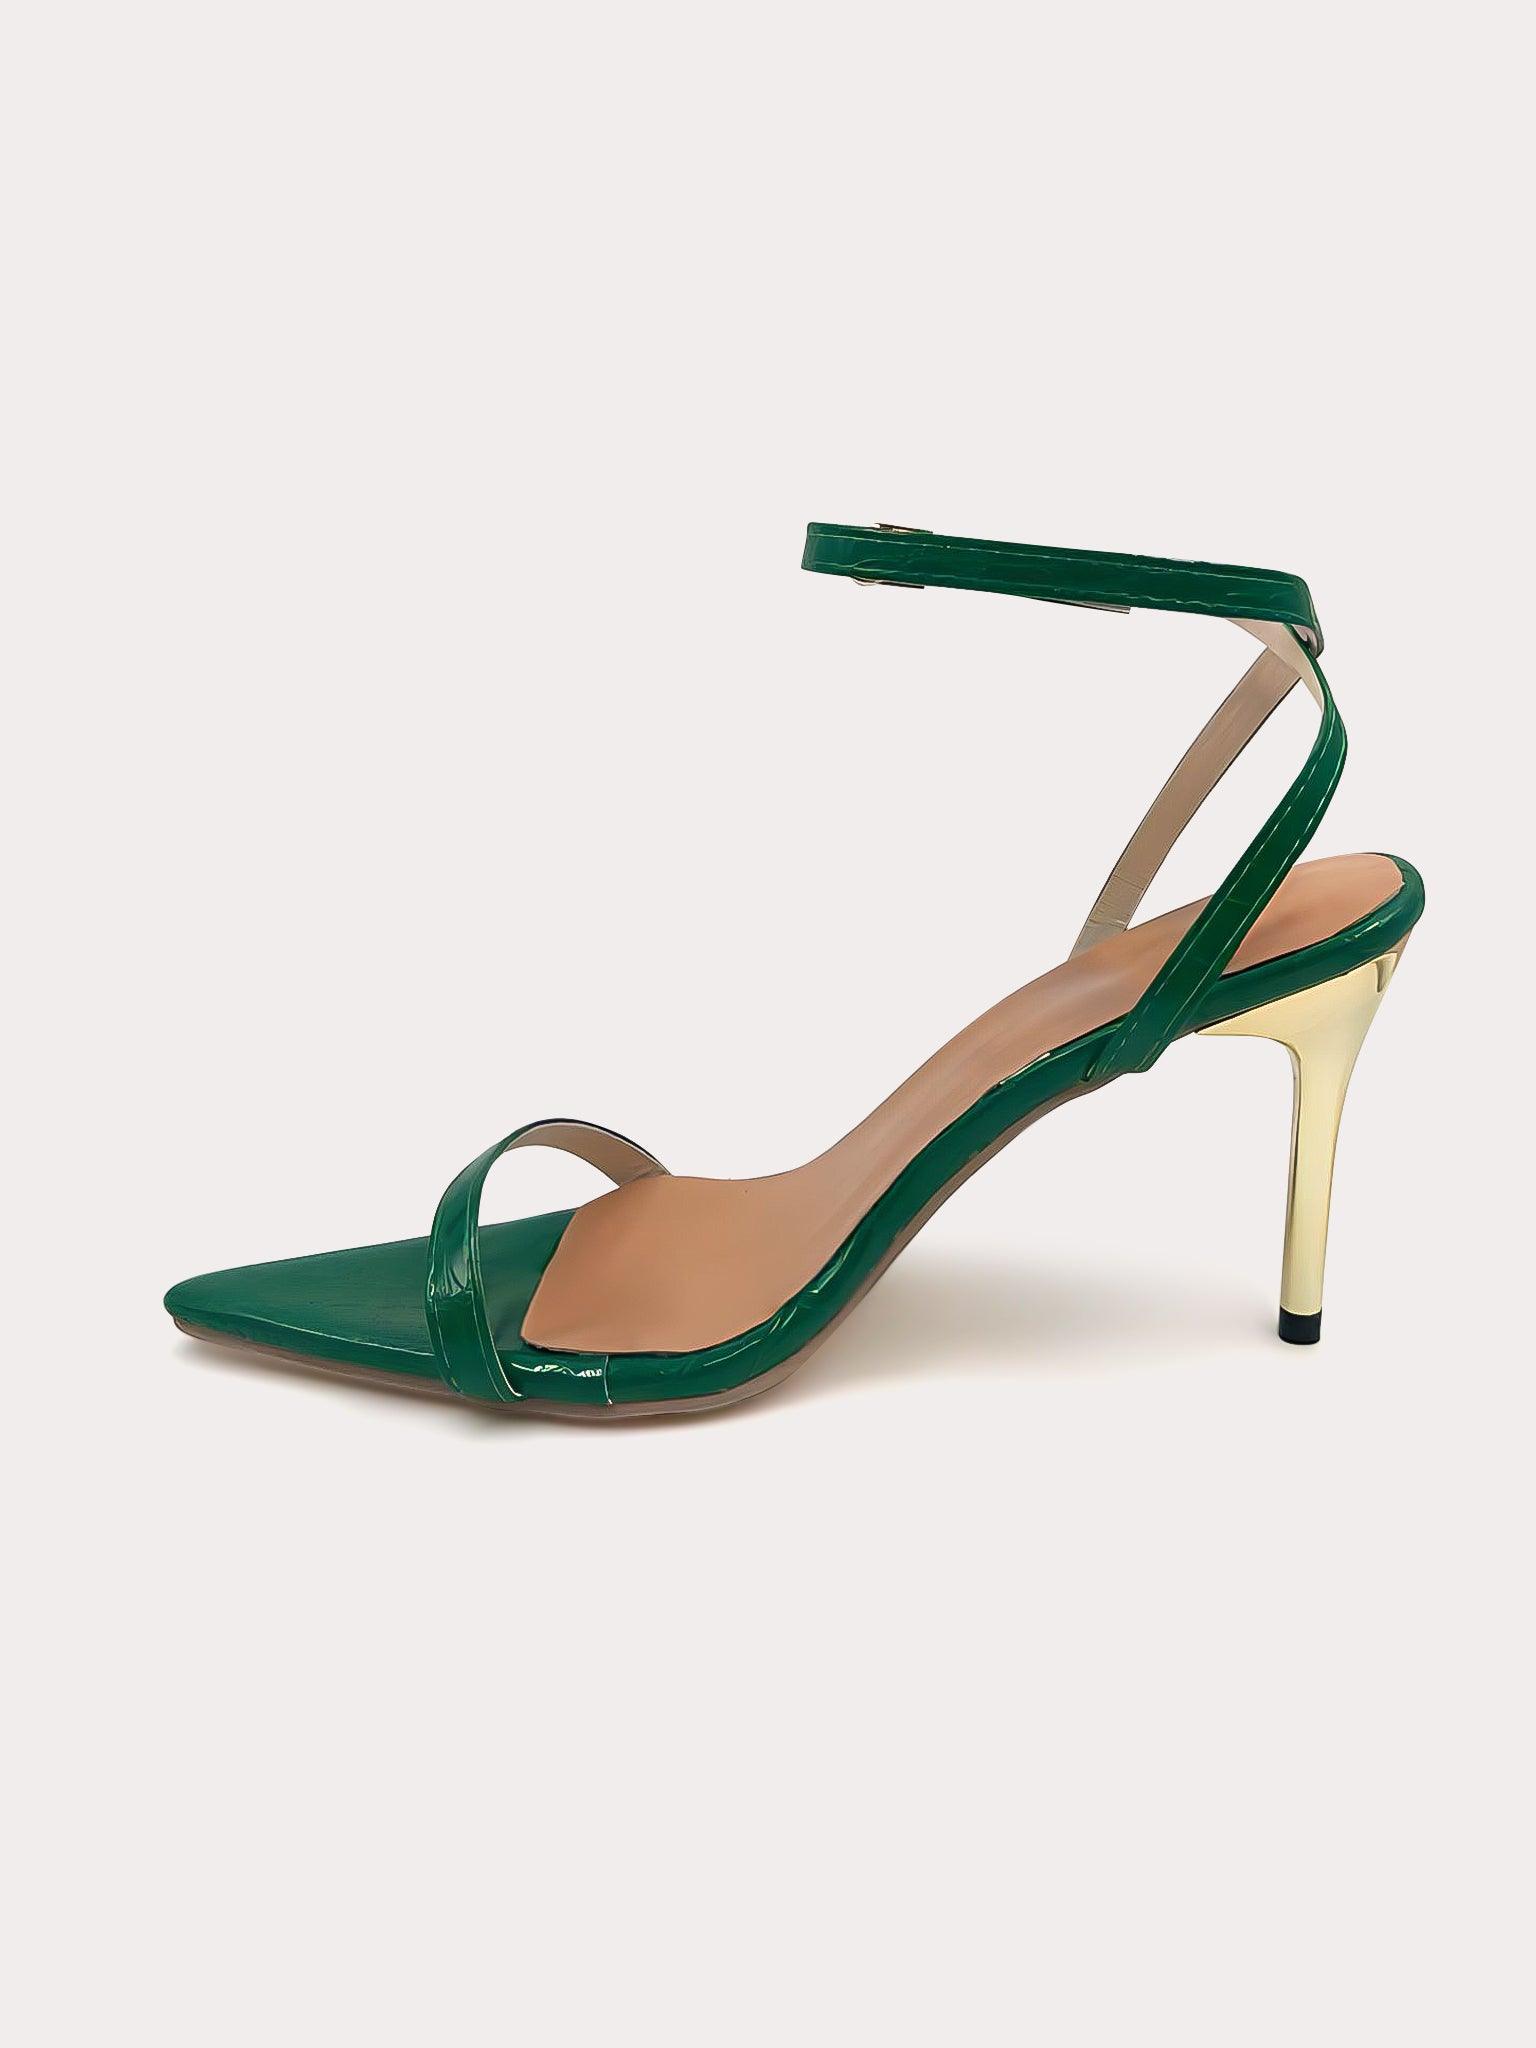 Kourtney - Green pumps with golden stiletto heel - IQUONIQUE